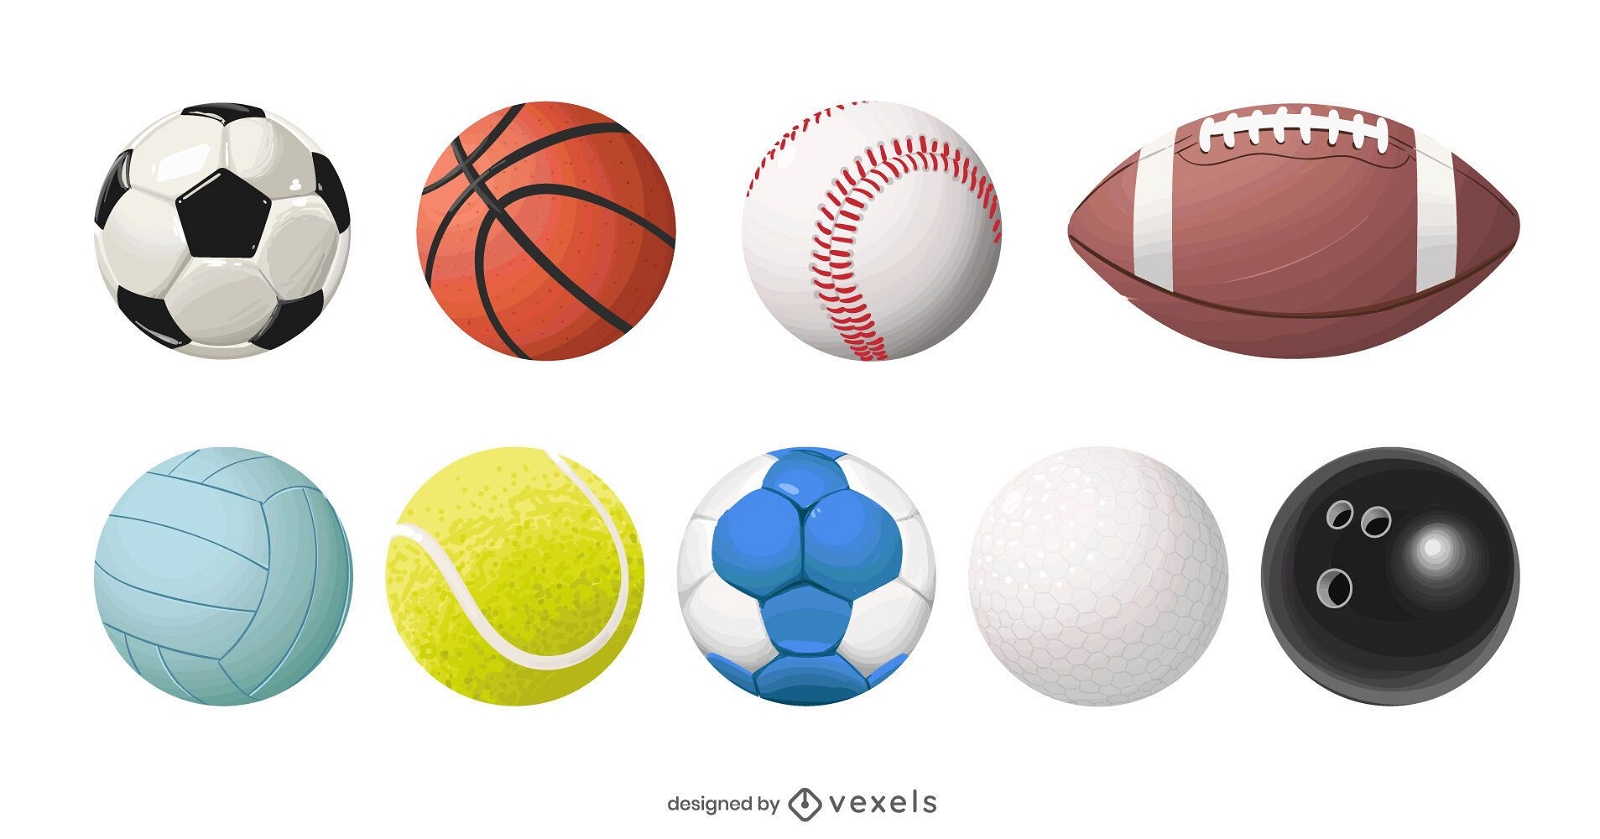 juego de pelotas deportivas realistas